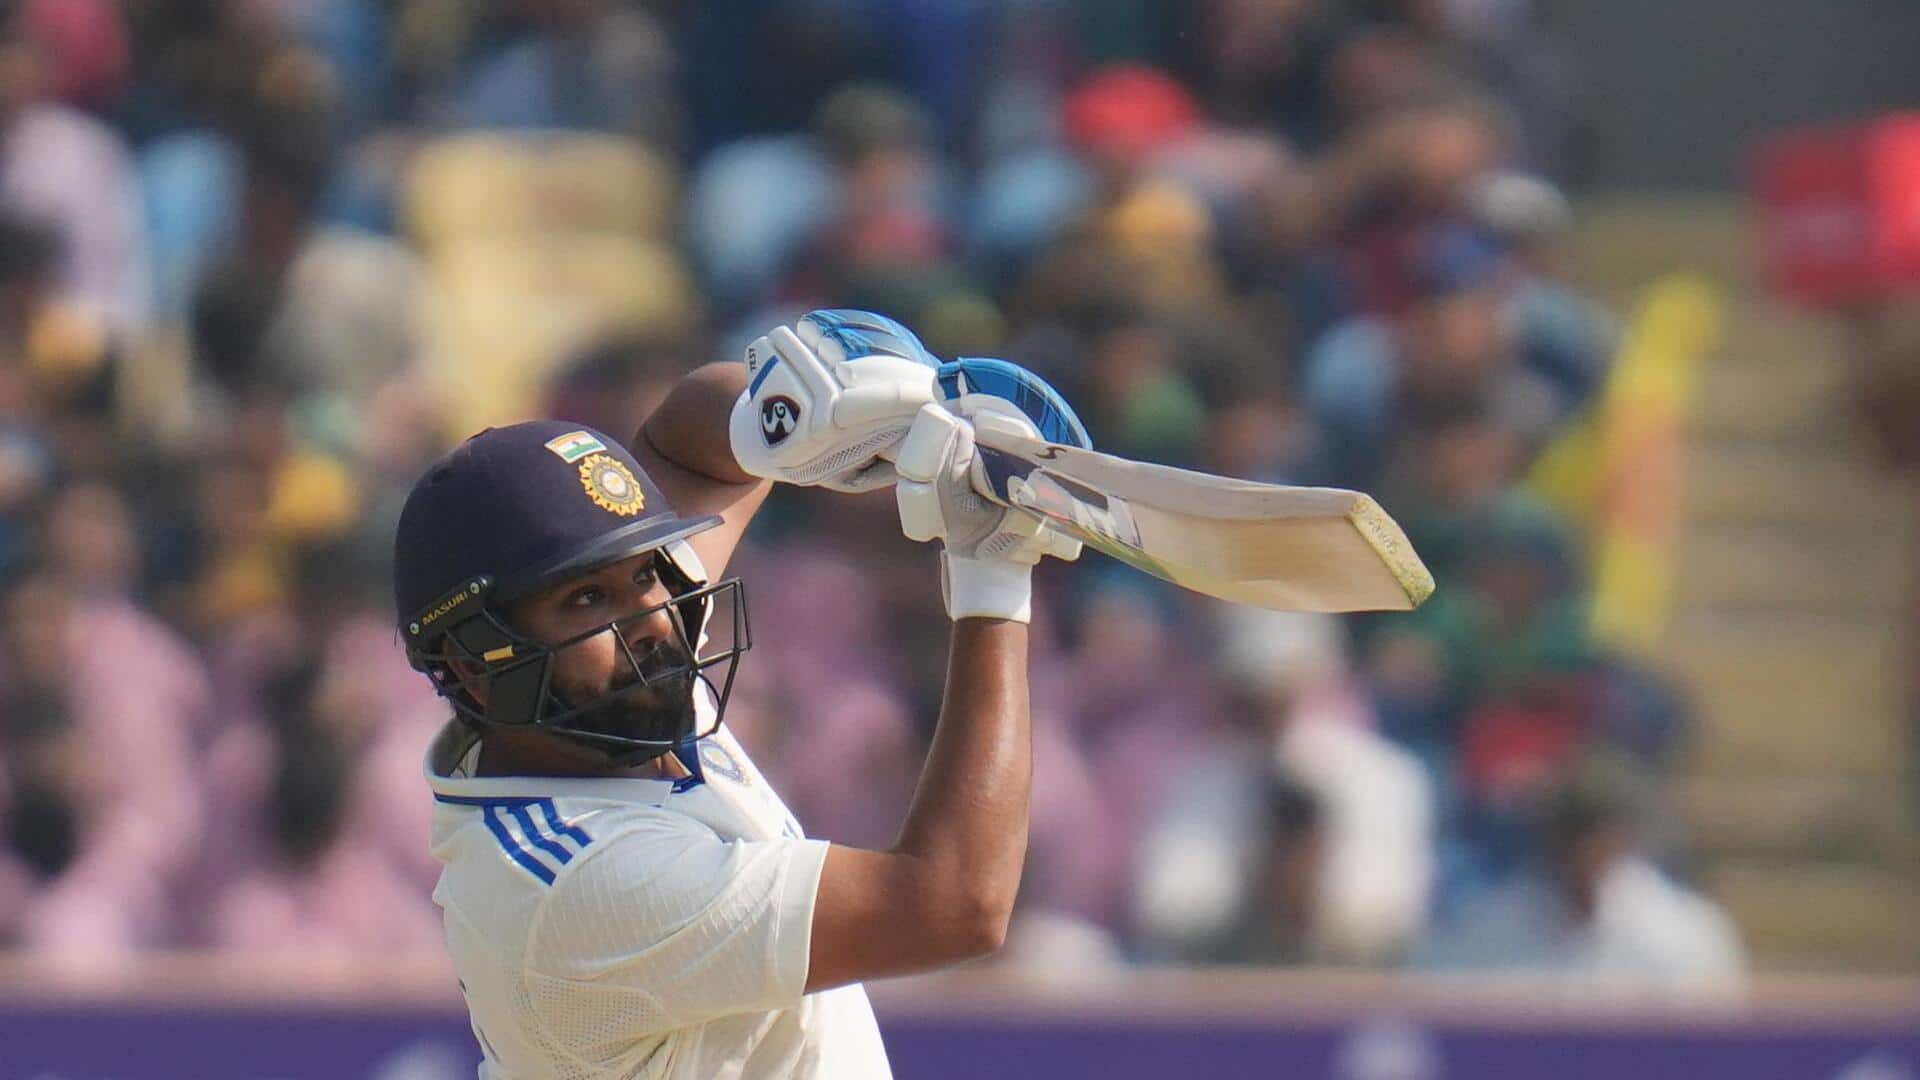 रोहित शर्मा टेस्ट में शतक जड़ने वाले सबसे उम्रदराज भारतीय कप्तान बने, जानिए आंकड़े